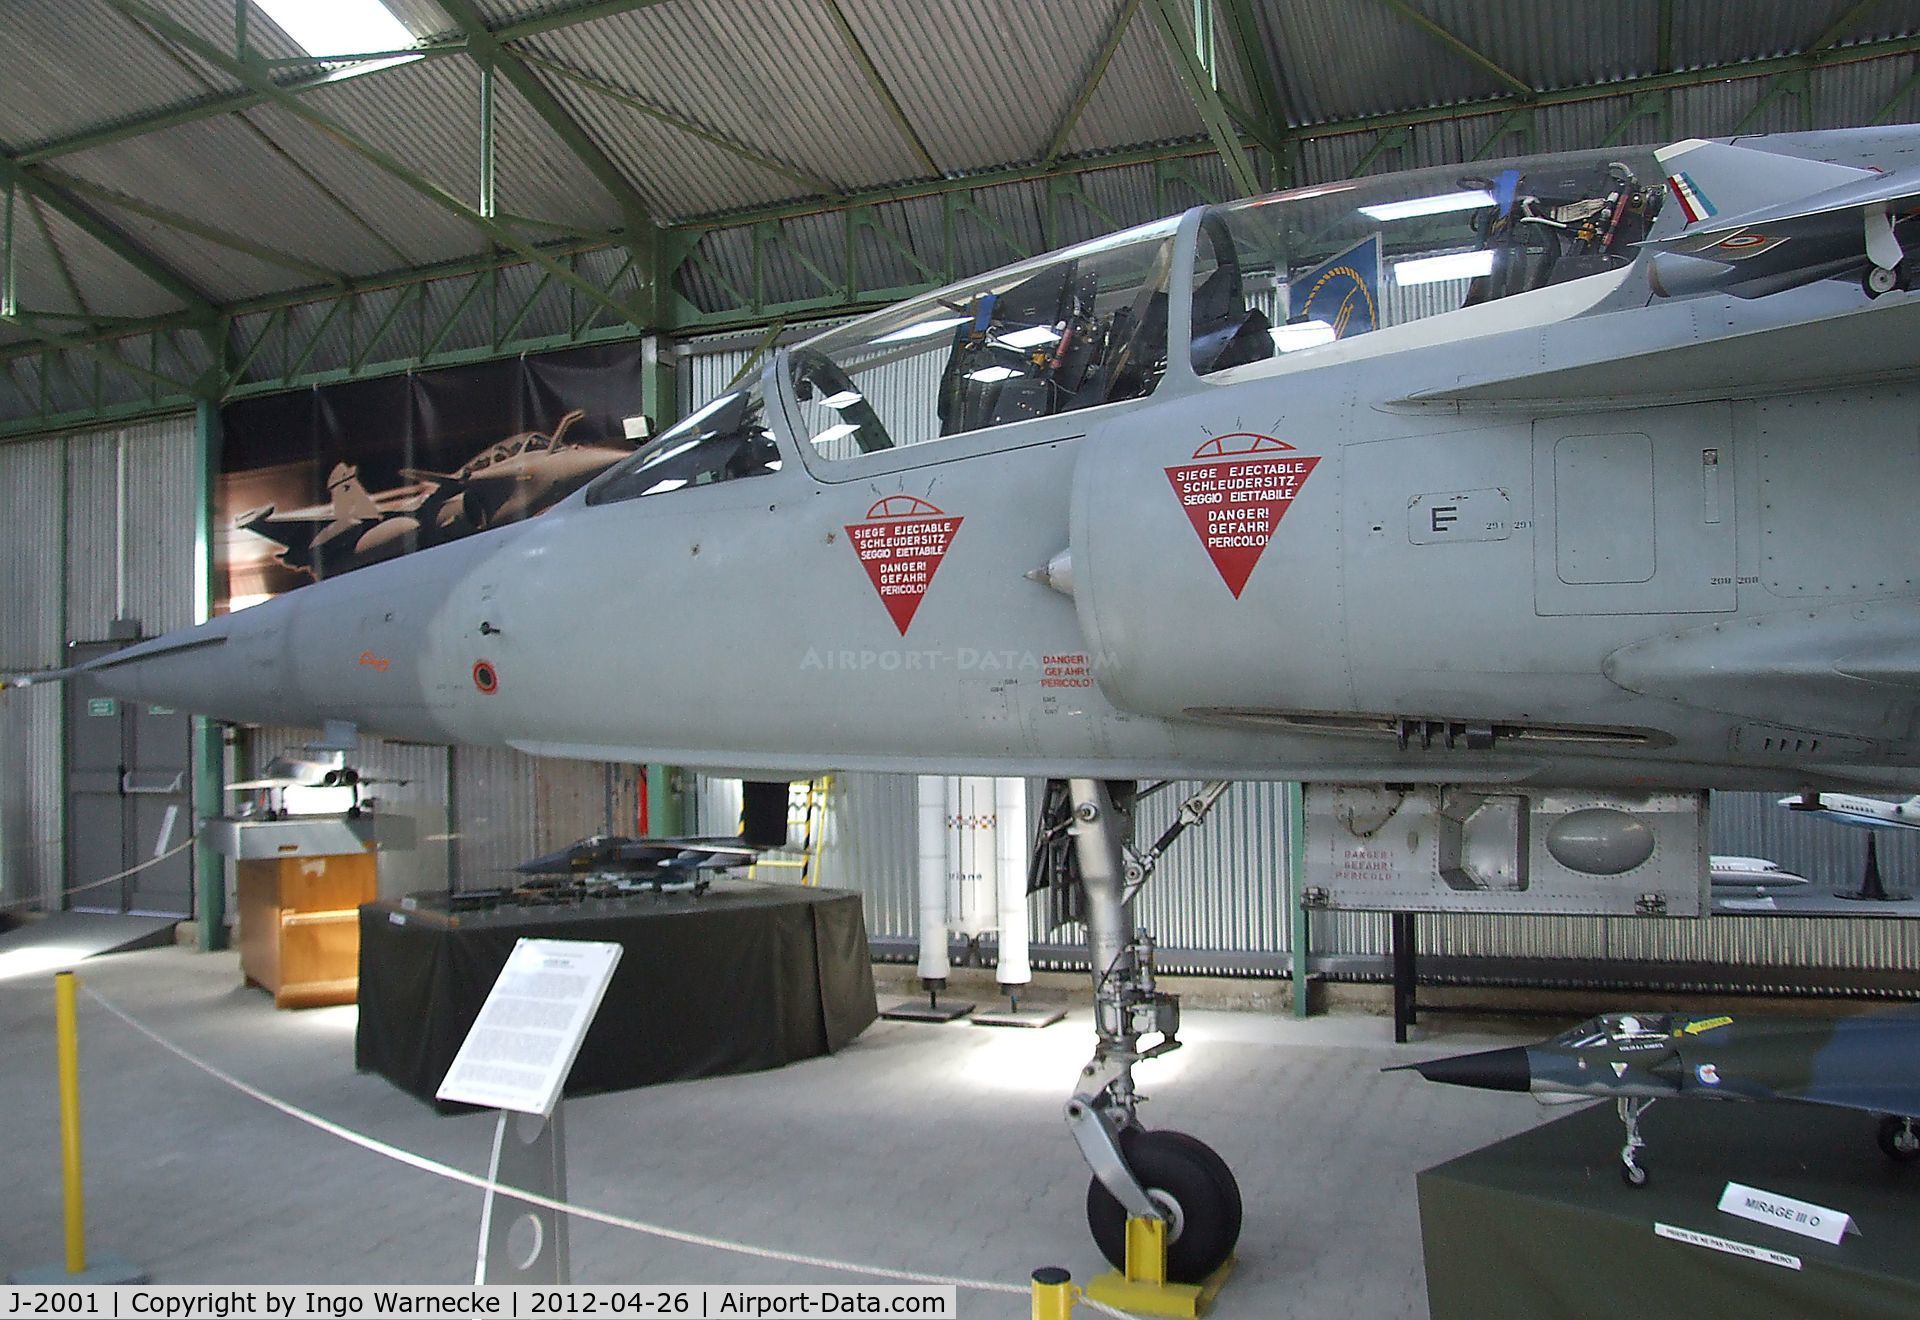 J-2001, Dassault Mirage IIIDS C/N 227F/BS1, Dassault Mirage III DS at the Musée Européen de l'Aviation de Chasse, Montelimar Ancone airfield